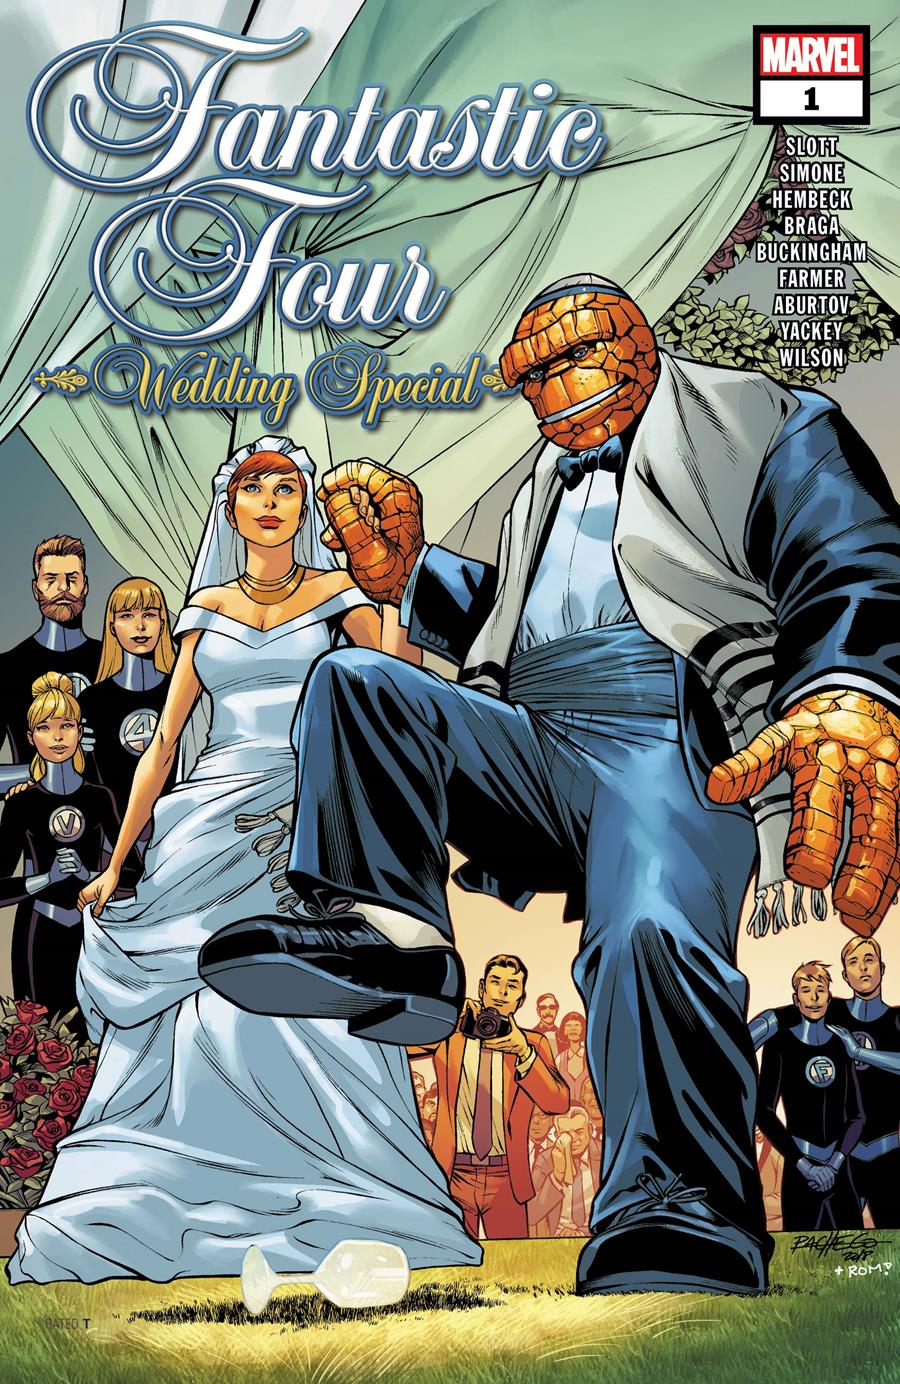  Fantastic Four: Wedding Special (2018) #1 | WEDDING01 | Fred Hembeck, Gail Simone, Dan Slott, Laura Braga | Terra de Còmic - Tu tienda de cómics online especializada en cómics, manga y merchandising